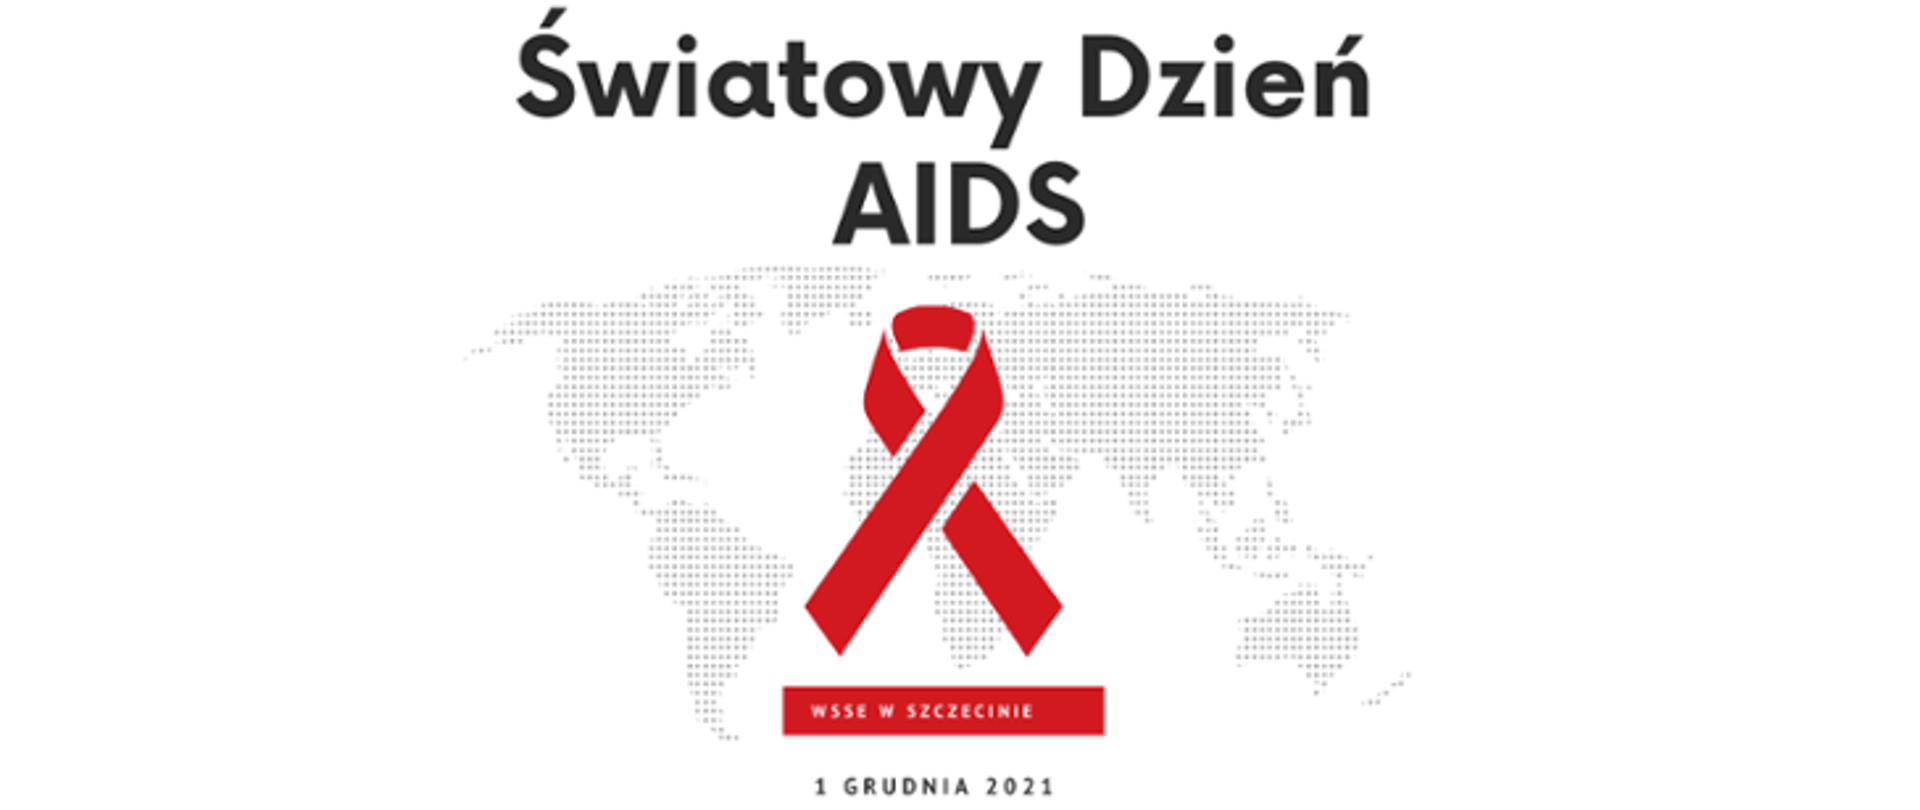 Na grafice znajdują się kontury kontynentów. Na ich tle znajduje się napis Światowy Dzień AIDS, poniżej widoczna jest czerwona wstążka. Tuż pod nią widnieje napis WSSE W SZCZECINIE oraz 1 GRUDNIA 2021.